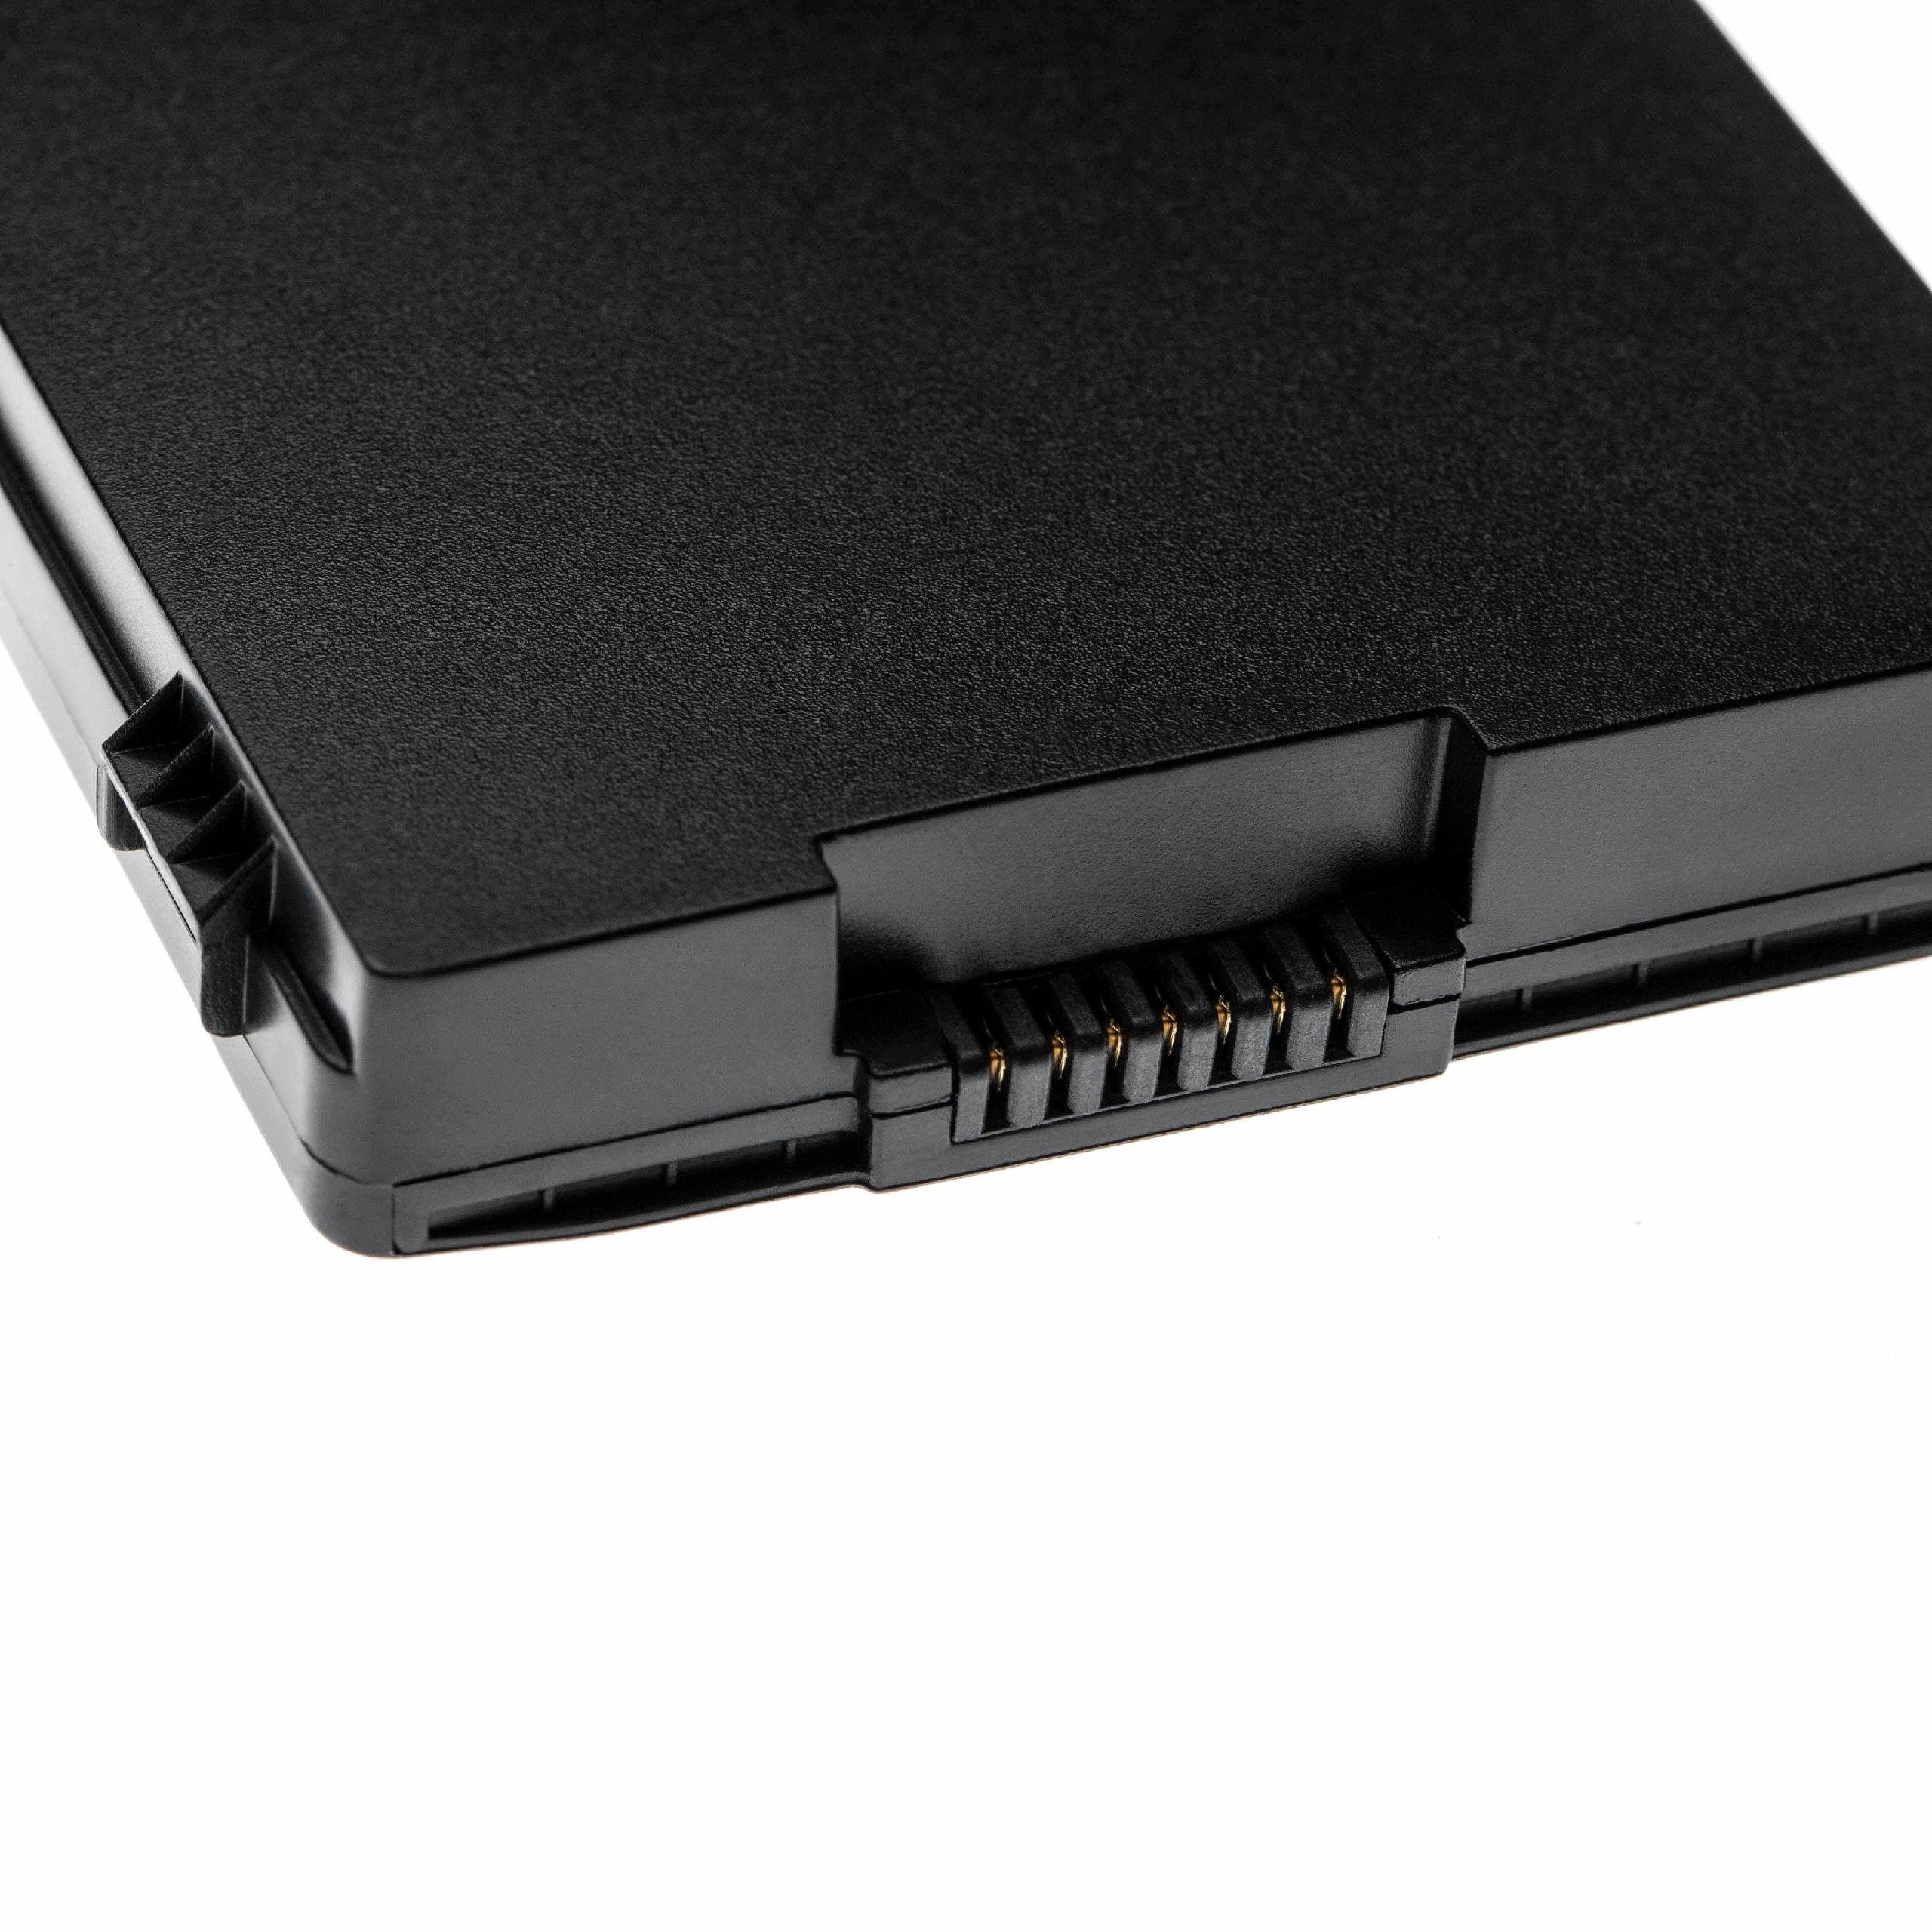 Vaio passend 5200 mAh Laptop-Akku für VPC-SB25FG/L, vhbw Sony VPC-SB25FG/P, VPC-SB25FG/S,